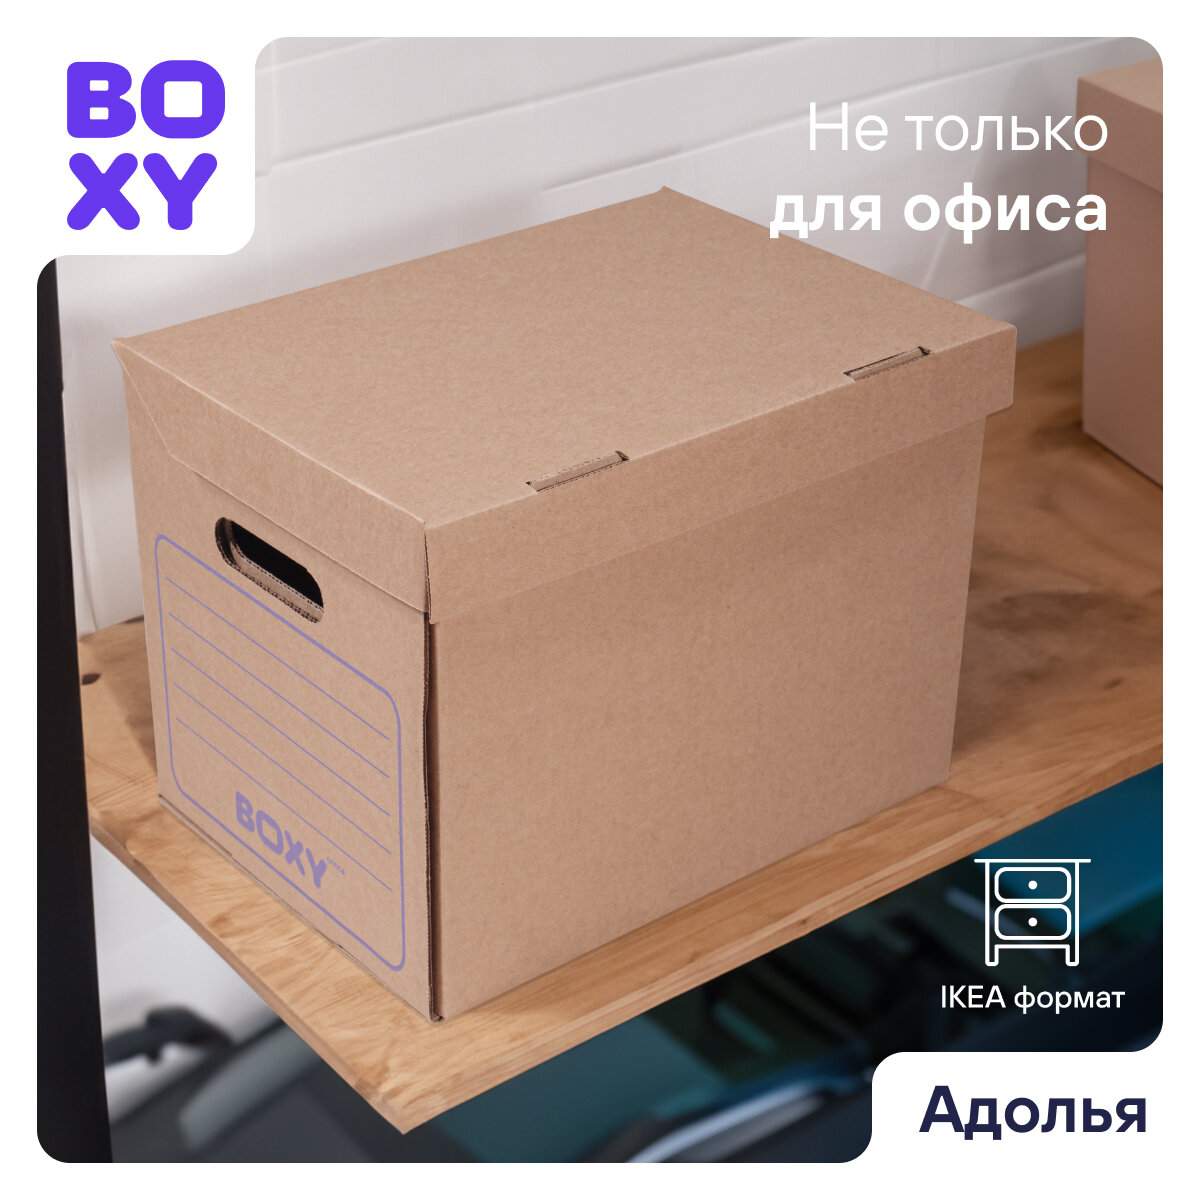 Картонная архивная коробка для офиса и дома адолья BOXY, гофрокартон, 34х25х26 см, 3 шт в упаковке